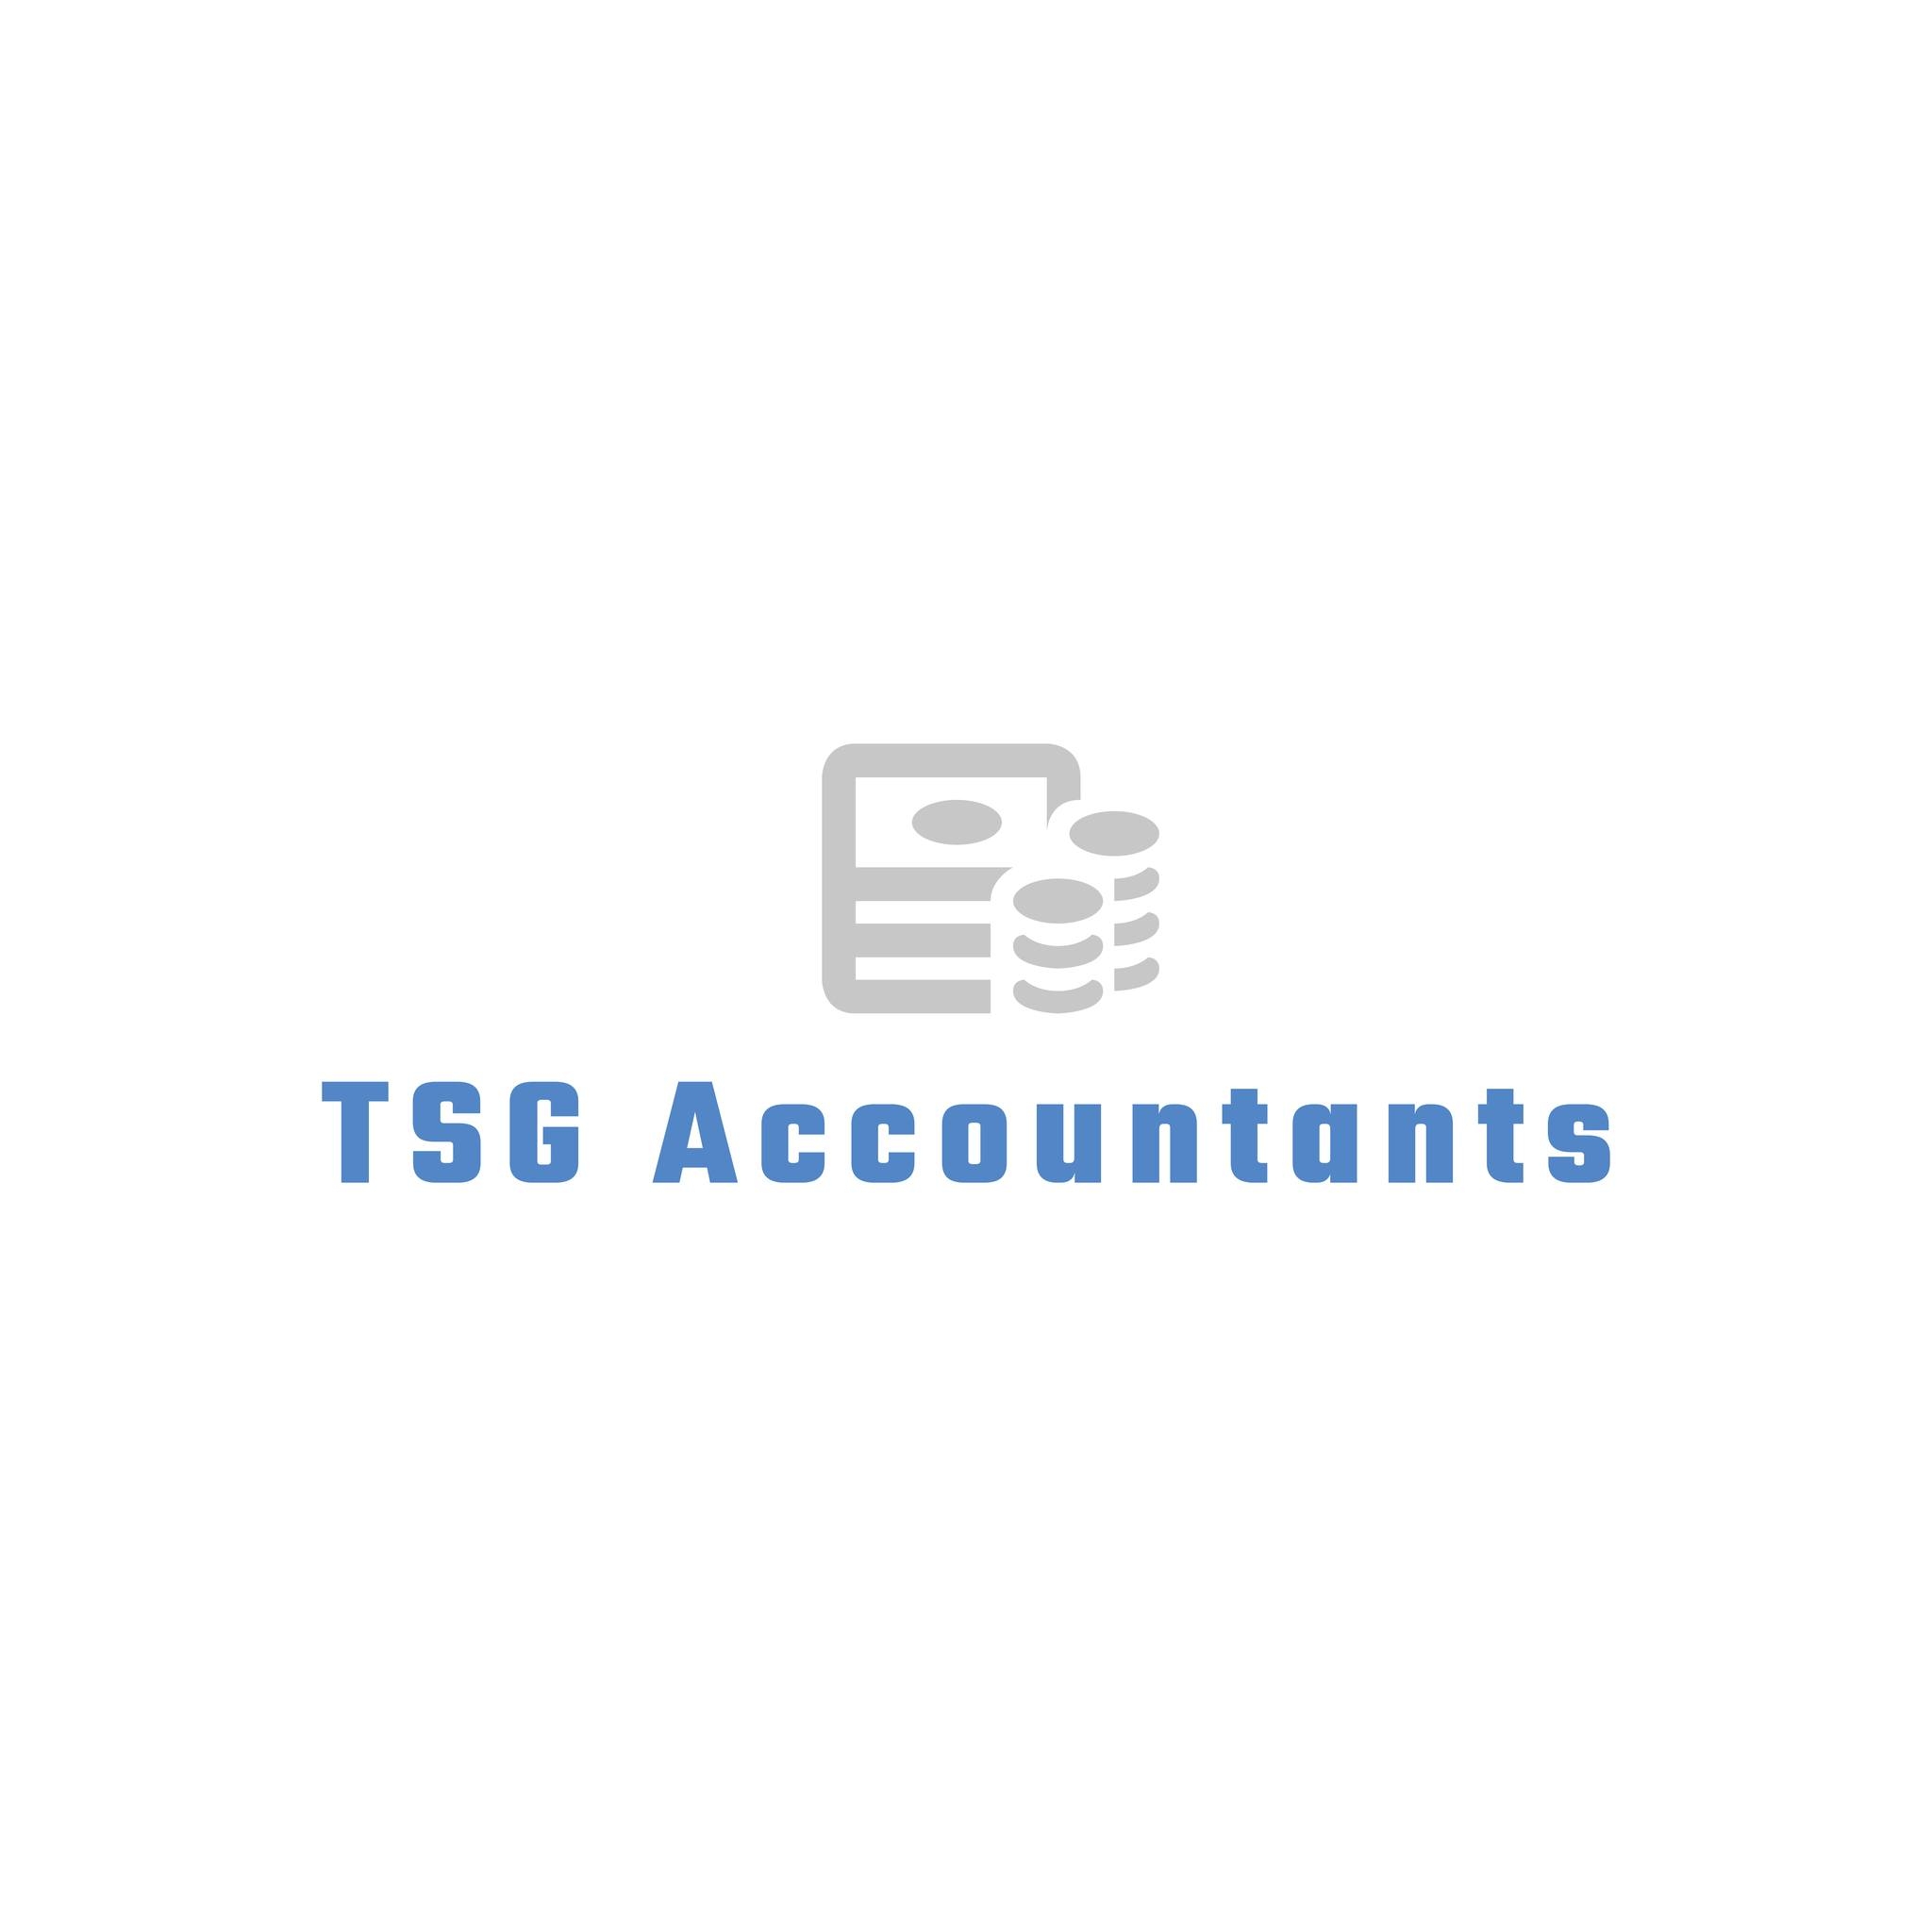 TSG Accountants